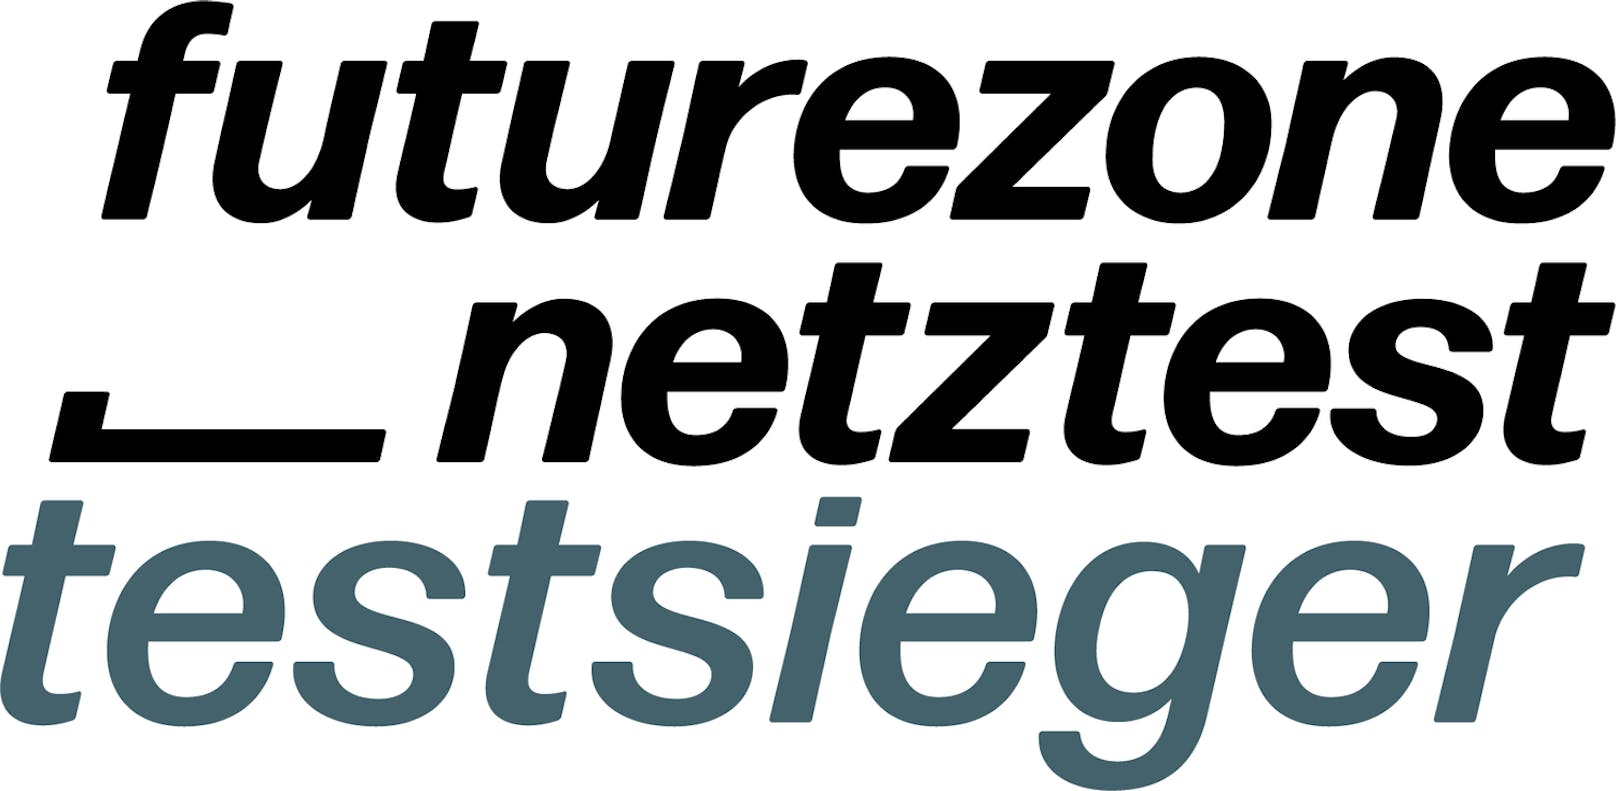 A1 gewinnt "futurezone"-Netztest 2021.